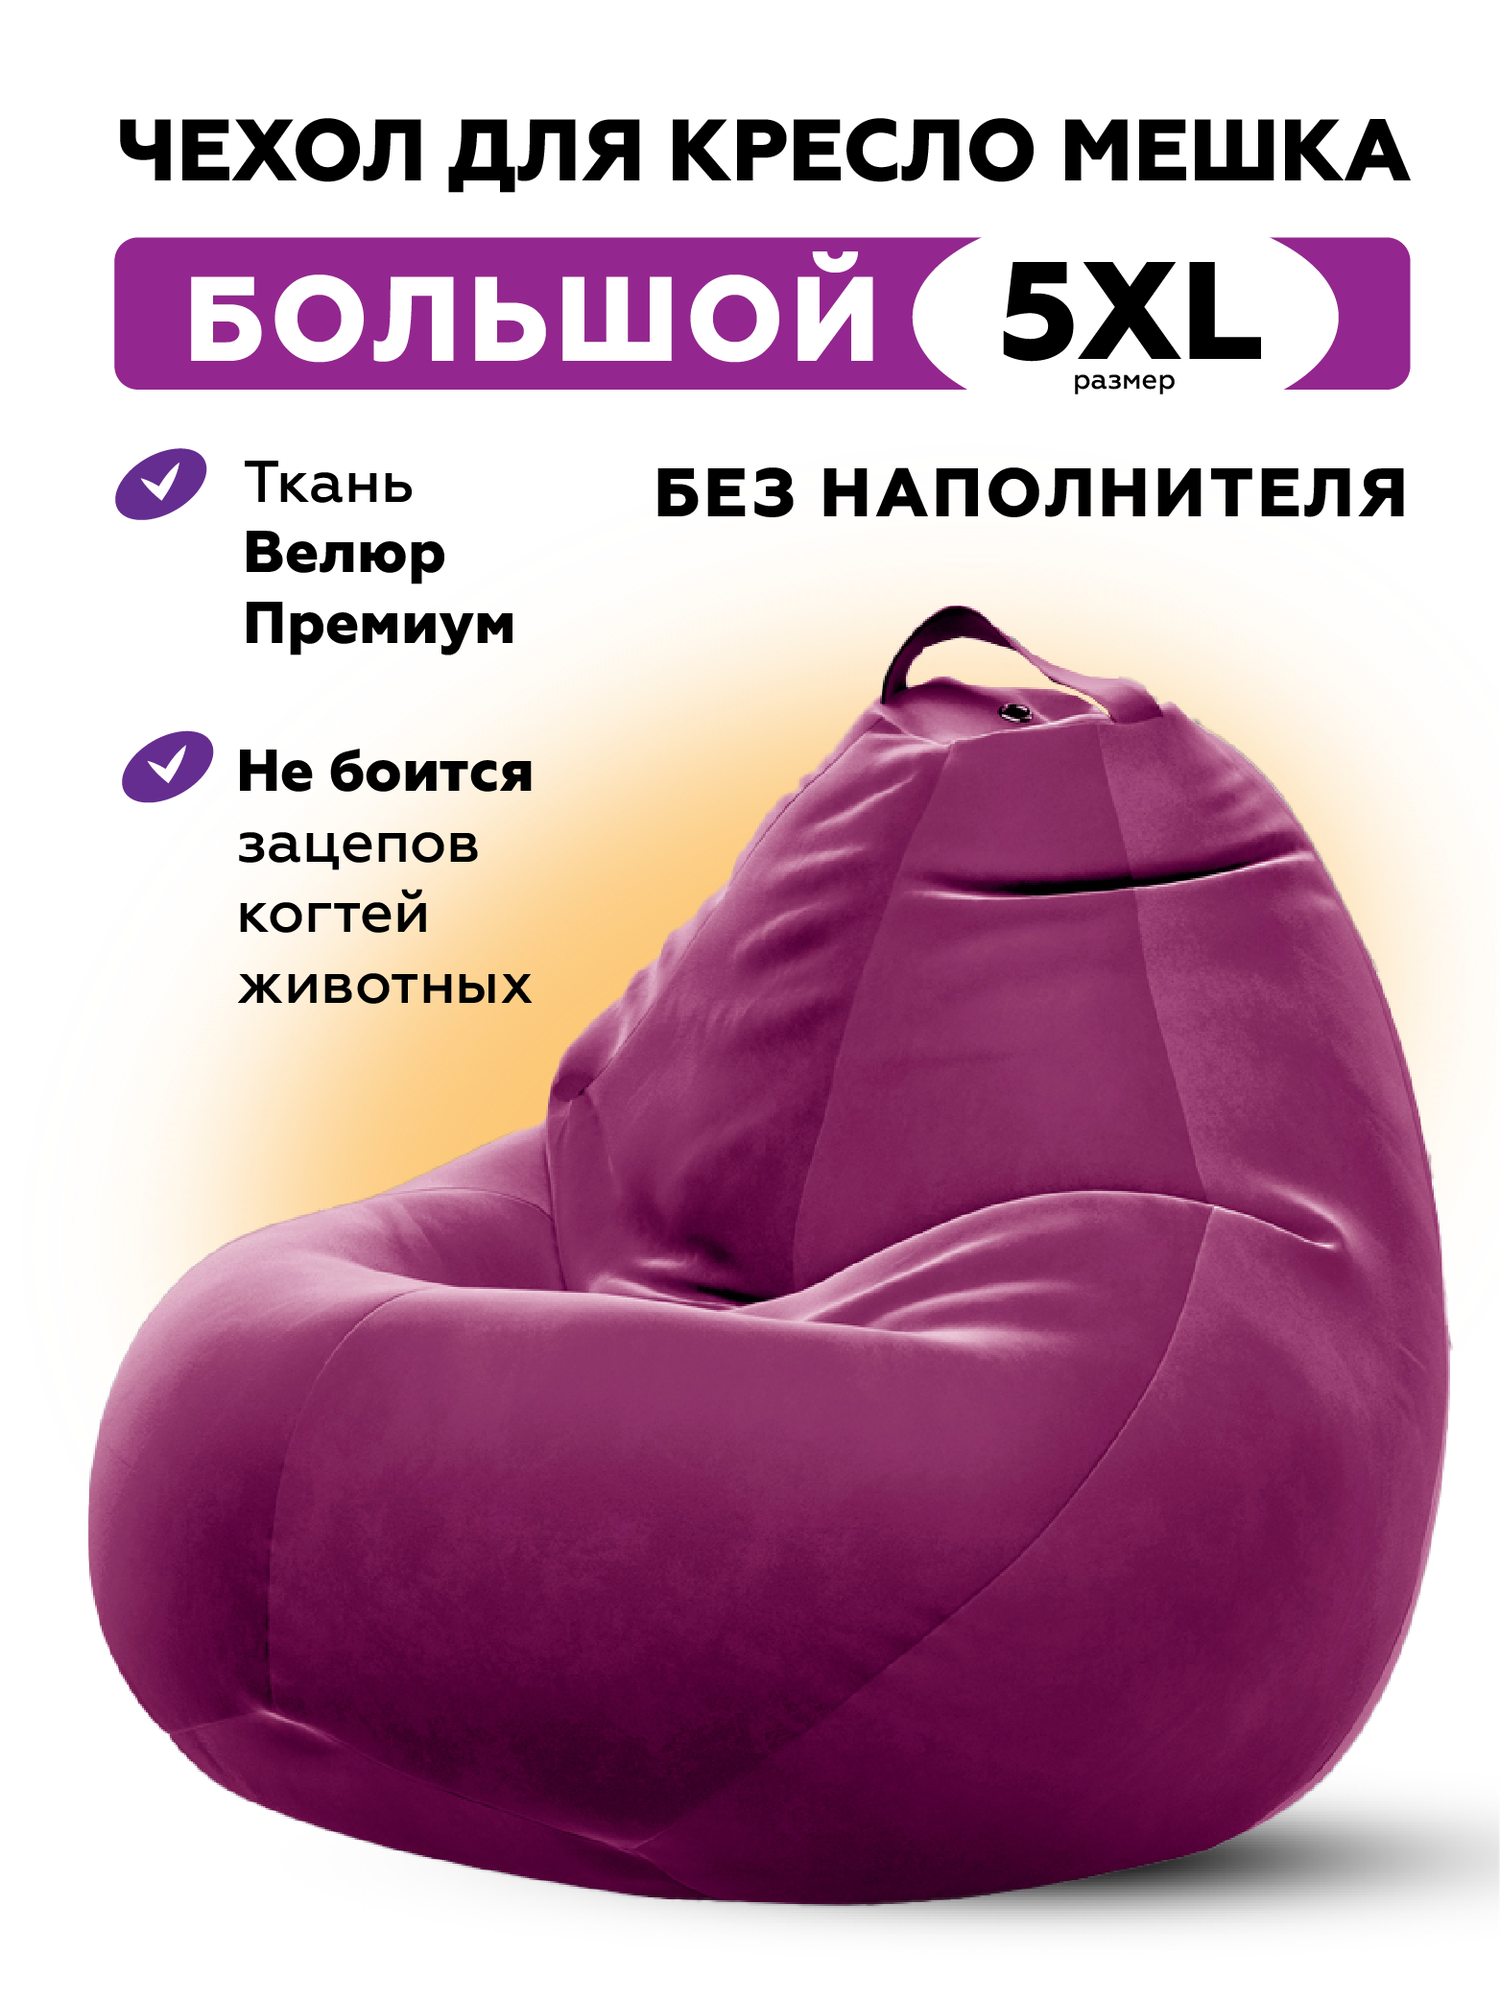 Чехол для кресла-мешка Kreslo-Puff, размер 5XL, велюр CAMARO, фиолетовый